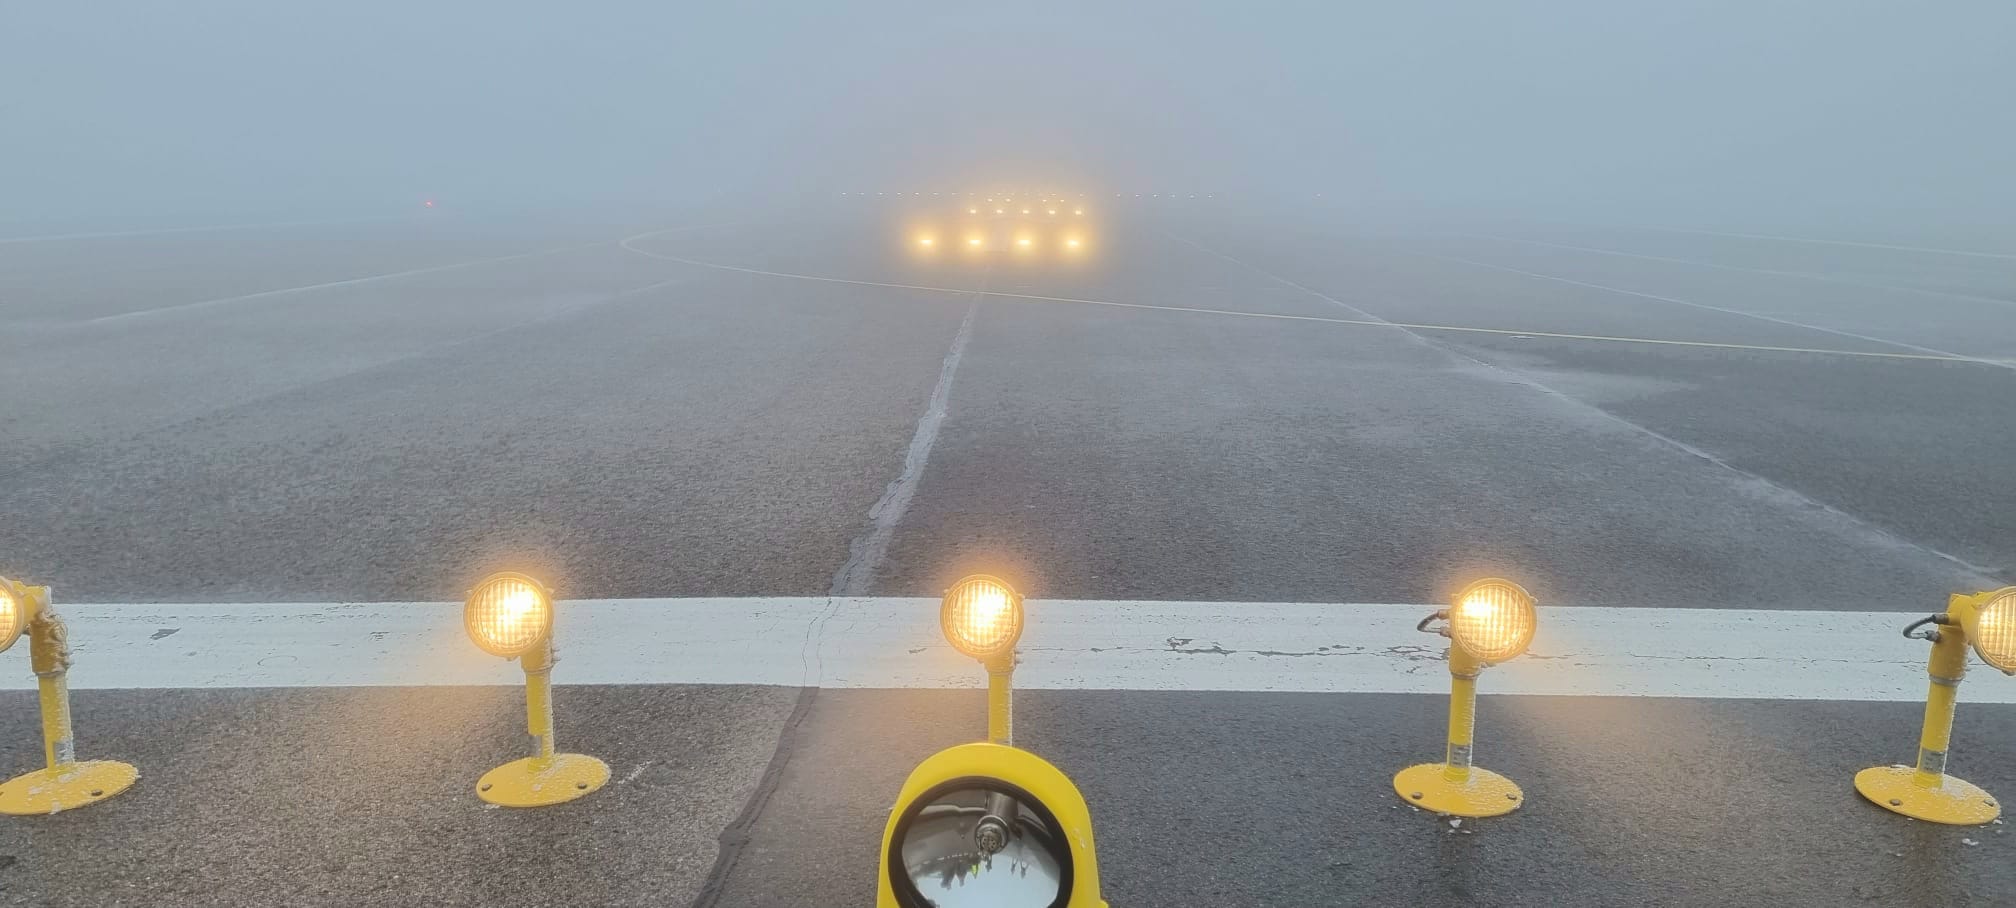 Avertizare ANM. Cod galben de ceaţă şi polei mai multe judeţe. Zborurile de pe aeroportul Suceava, afectate